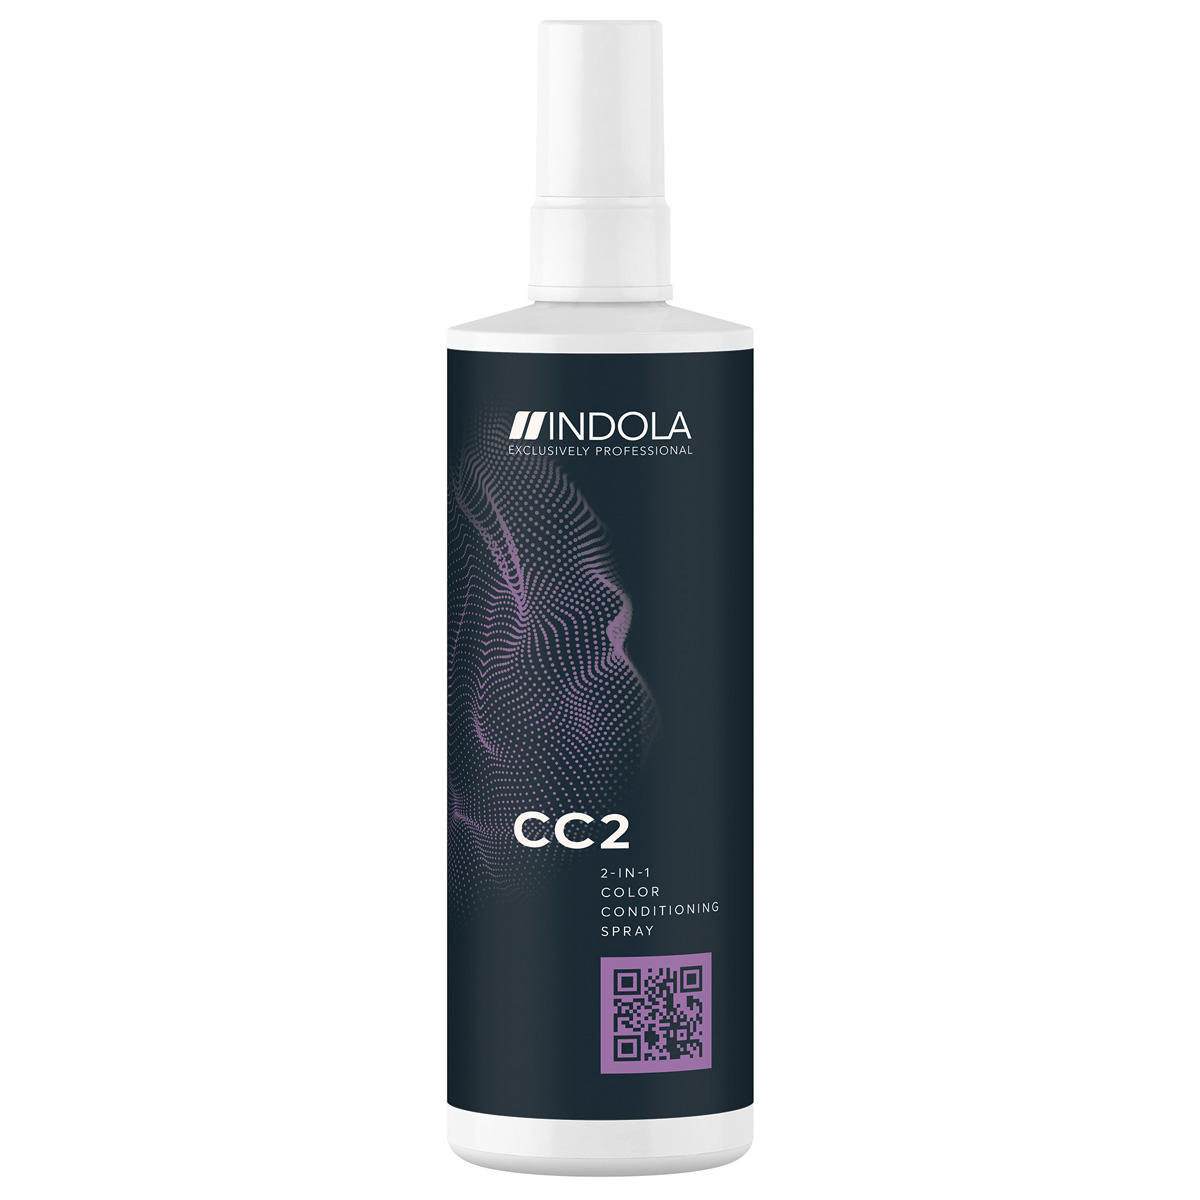 Indola CC2 2-in-1 Color Conditioning Spray 250 ml - 1